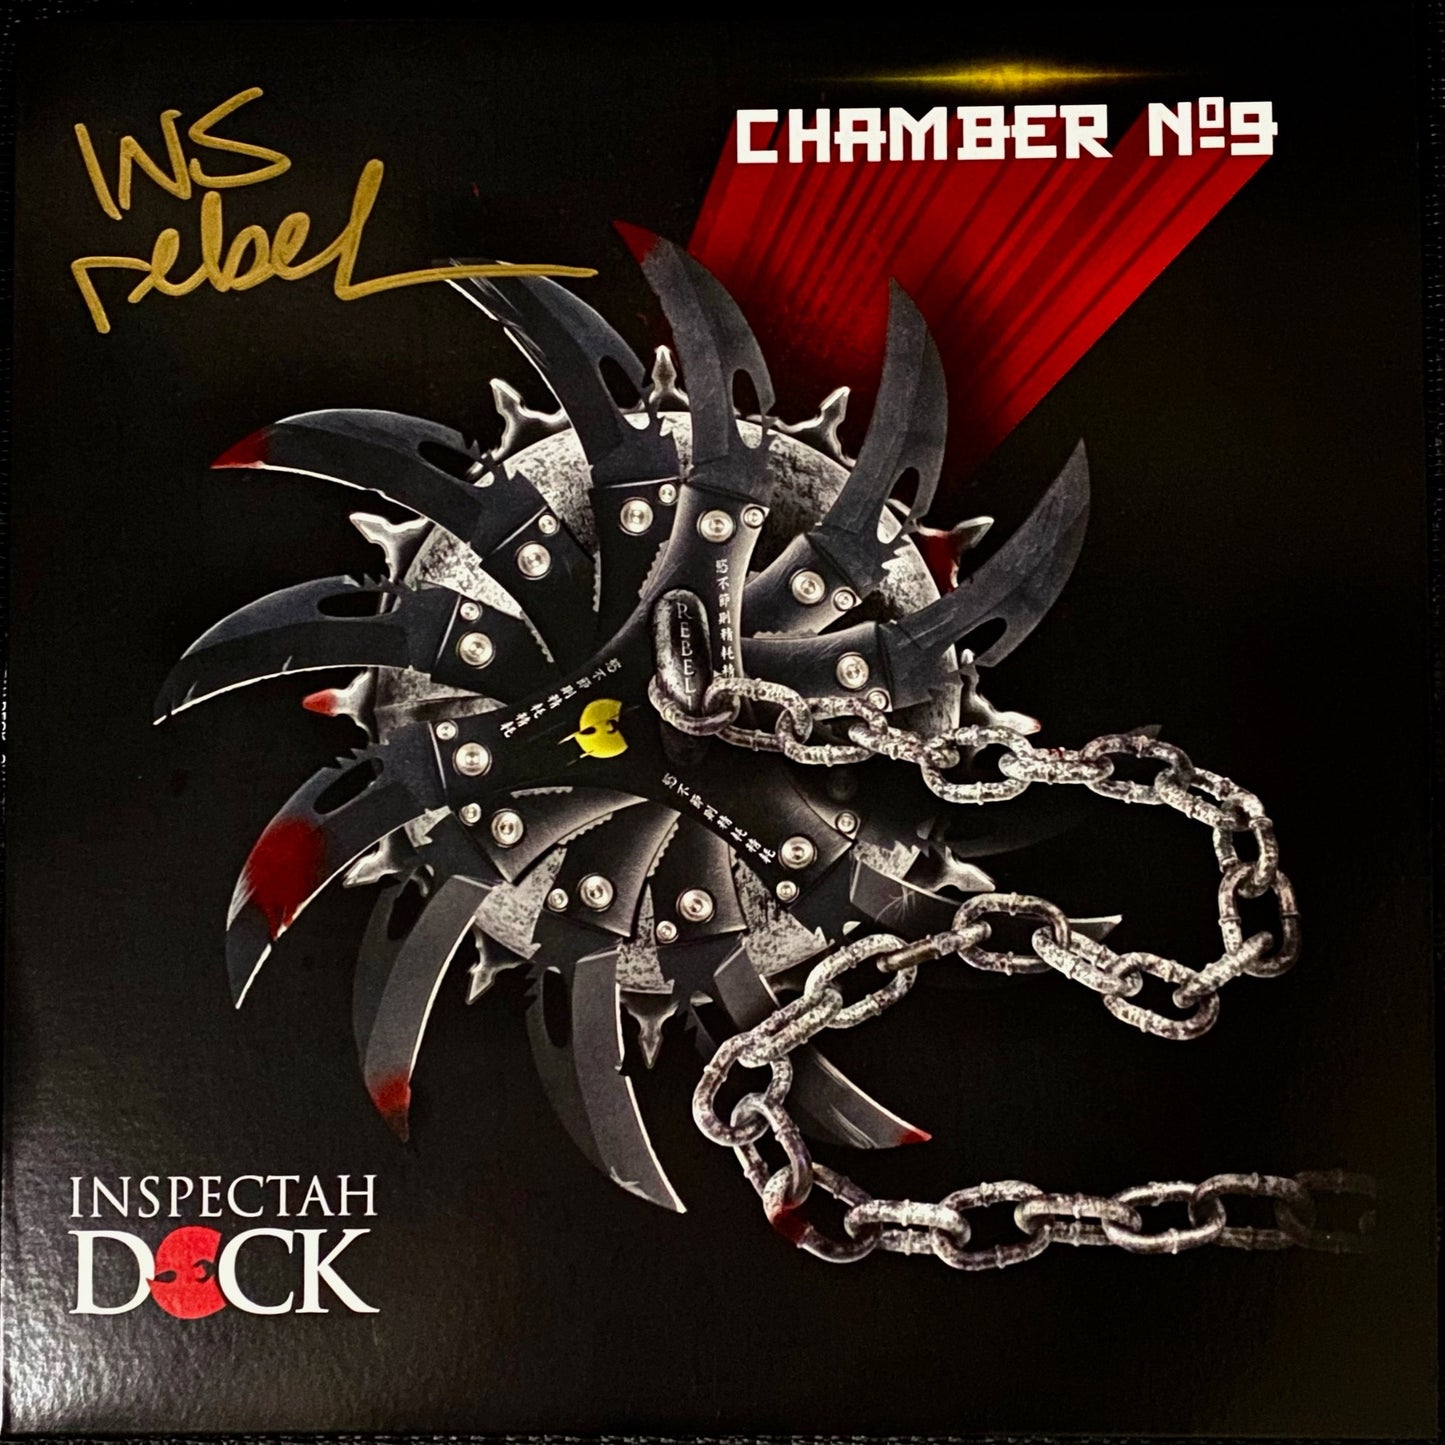 Inspectah Deck – Chamber No. 9